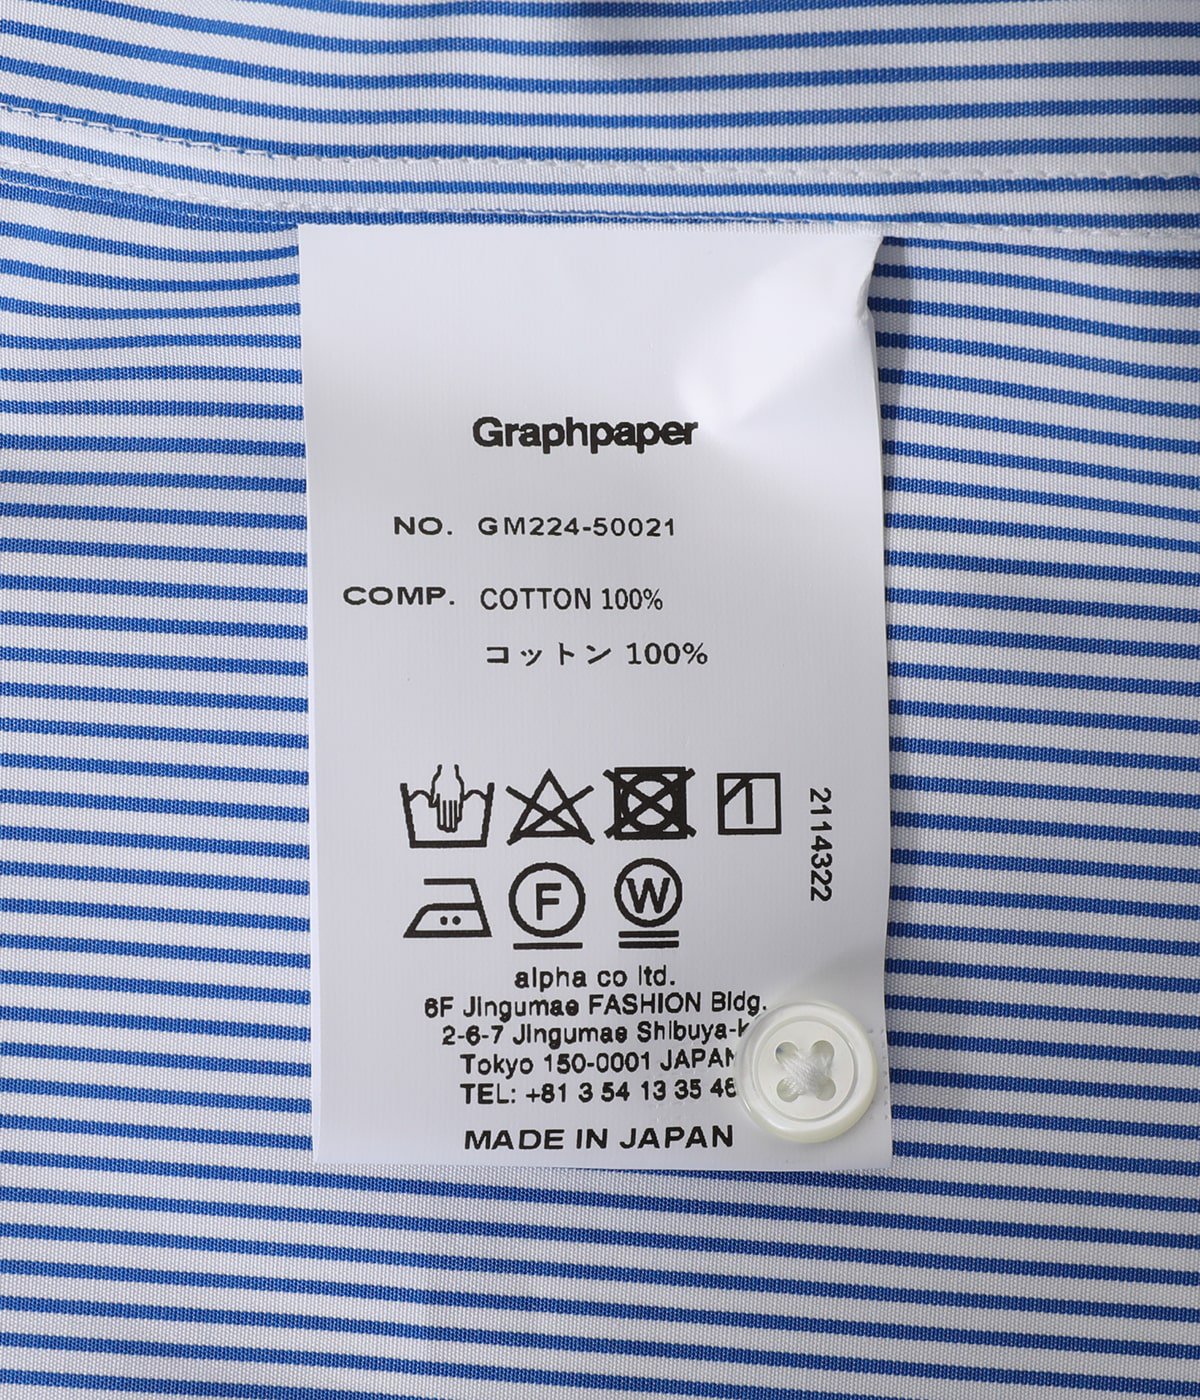 graphpaper  tomasmason for GP gray